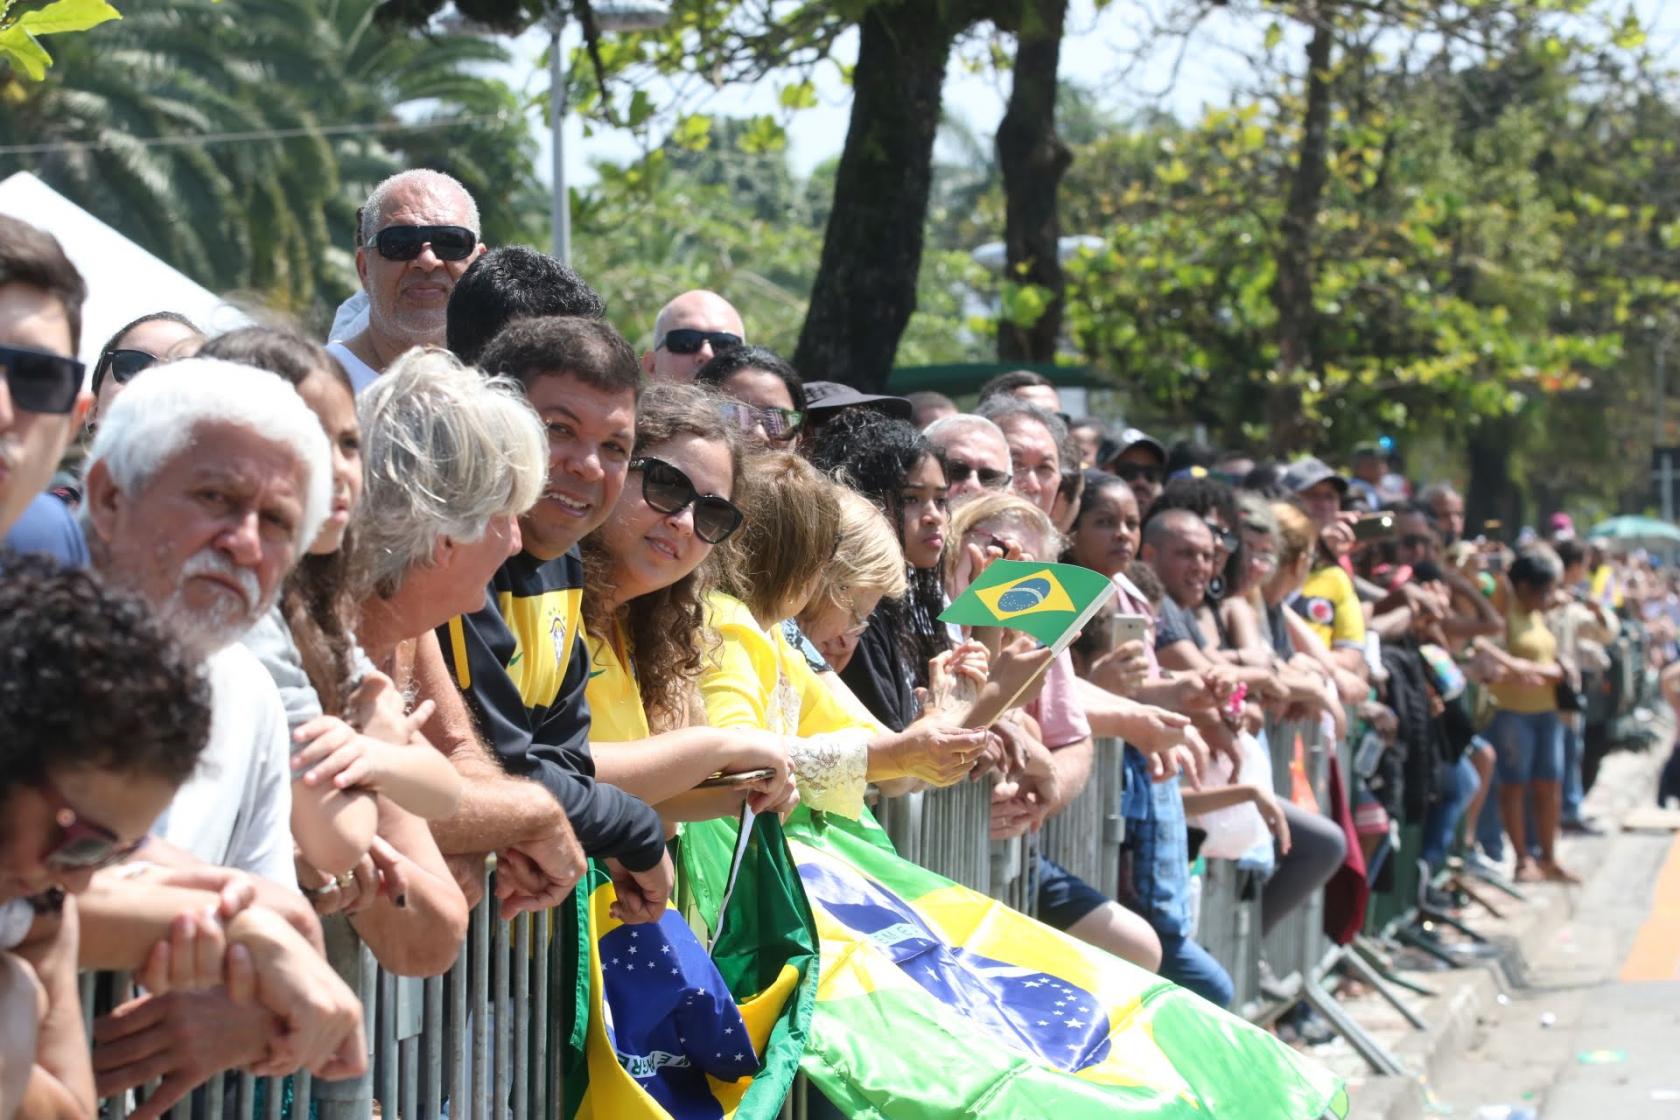 Público está atrás das defesas para assistir ao desfile. Muitas pessoas seguram bandeiras do Brasil. #Pracegover